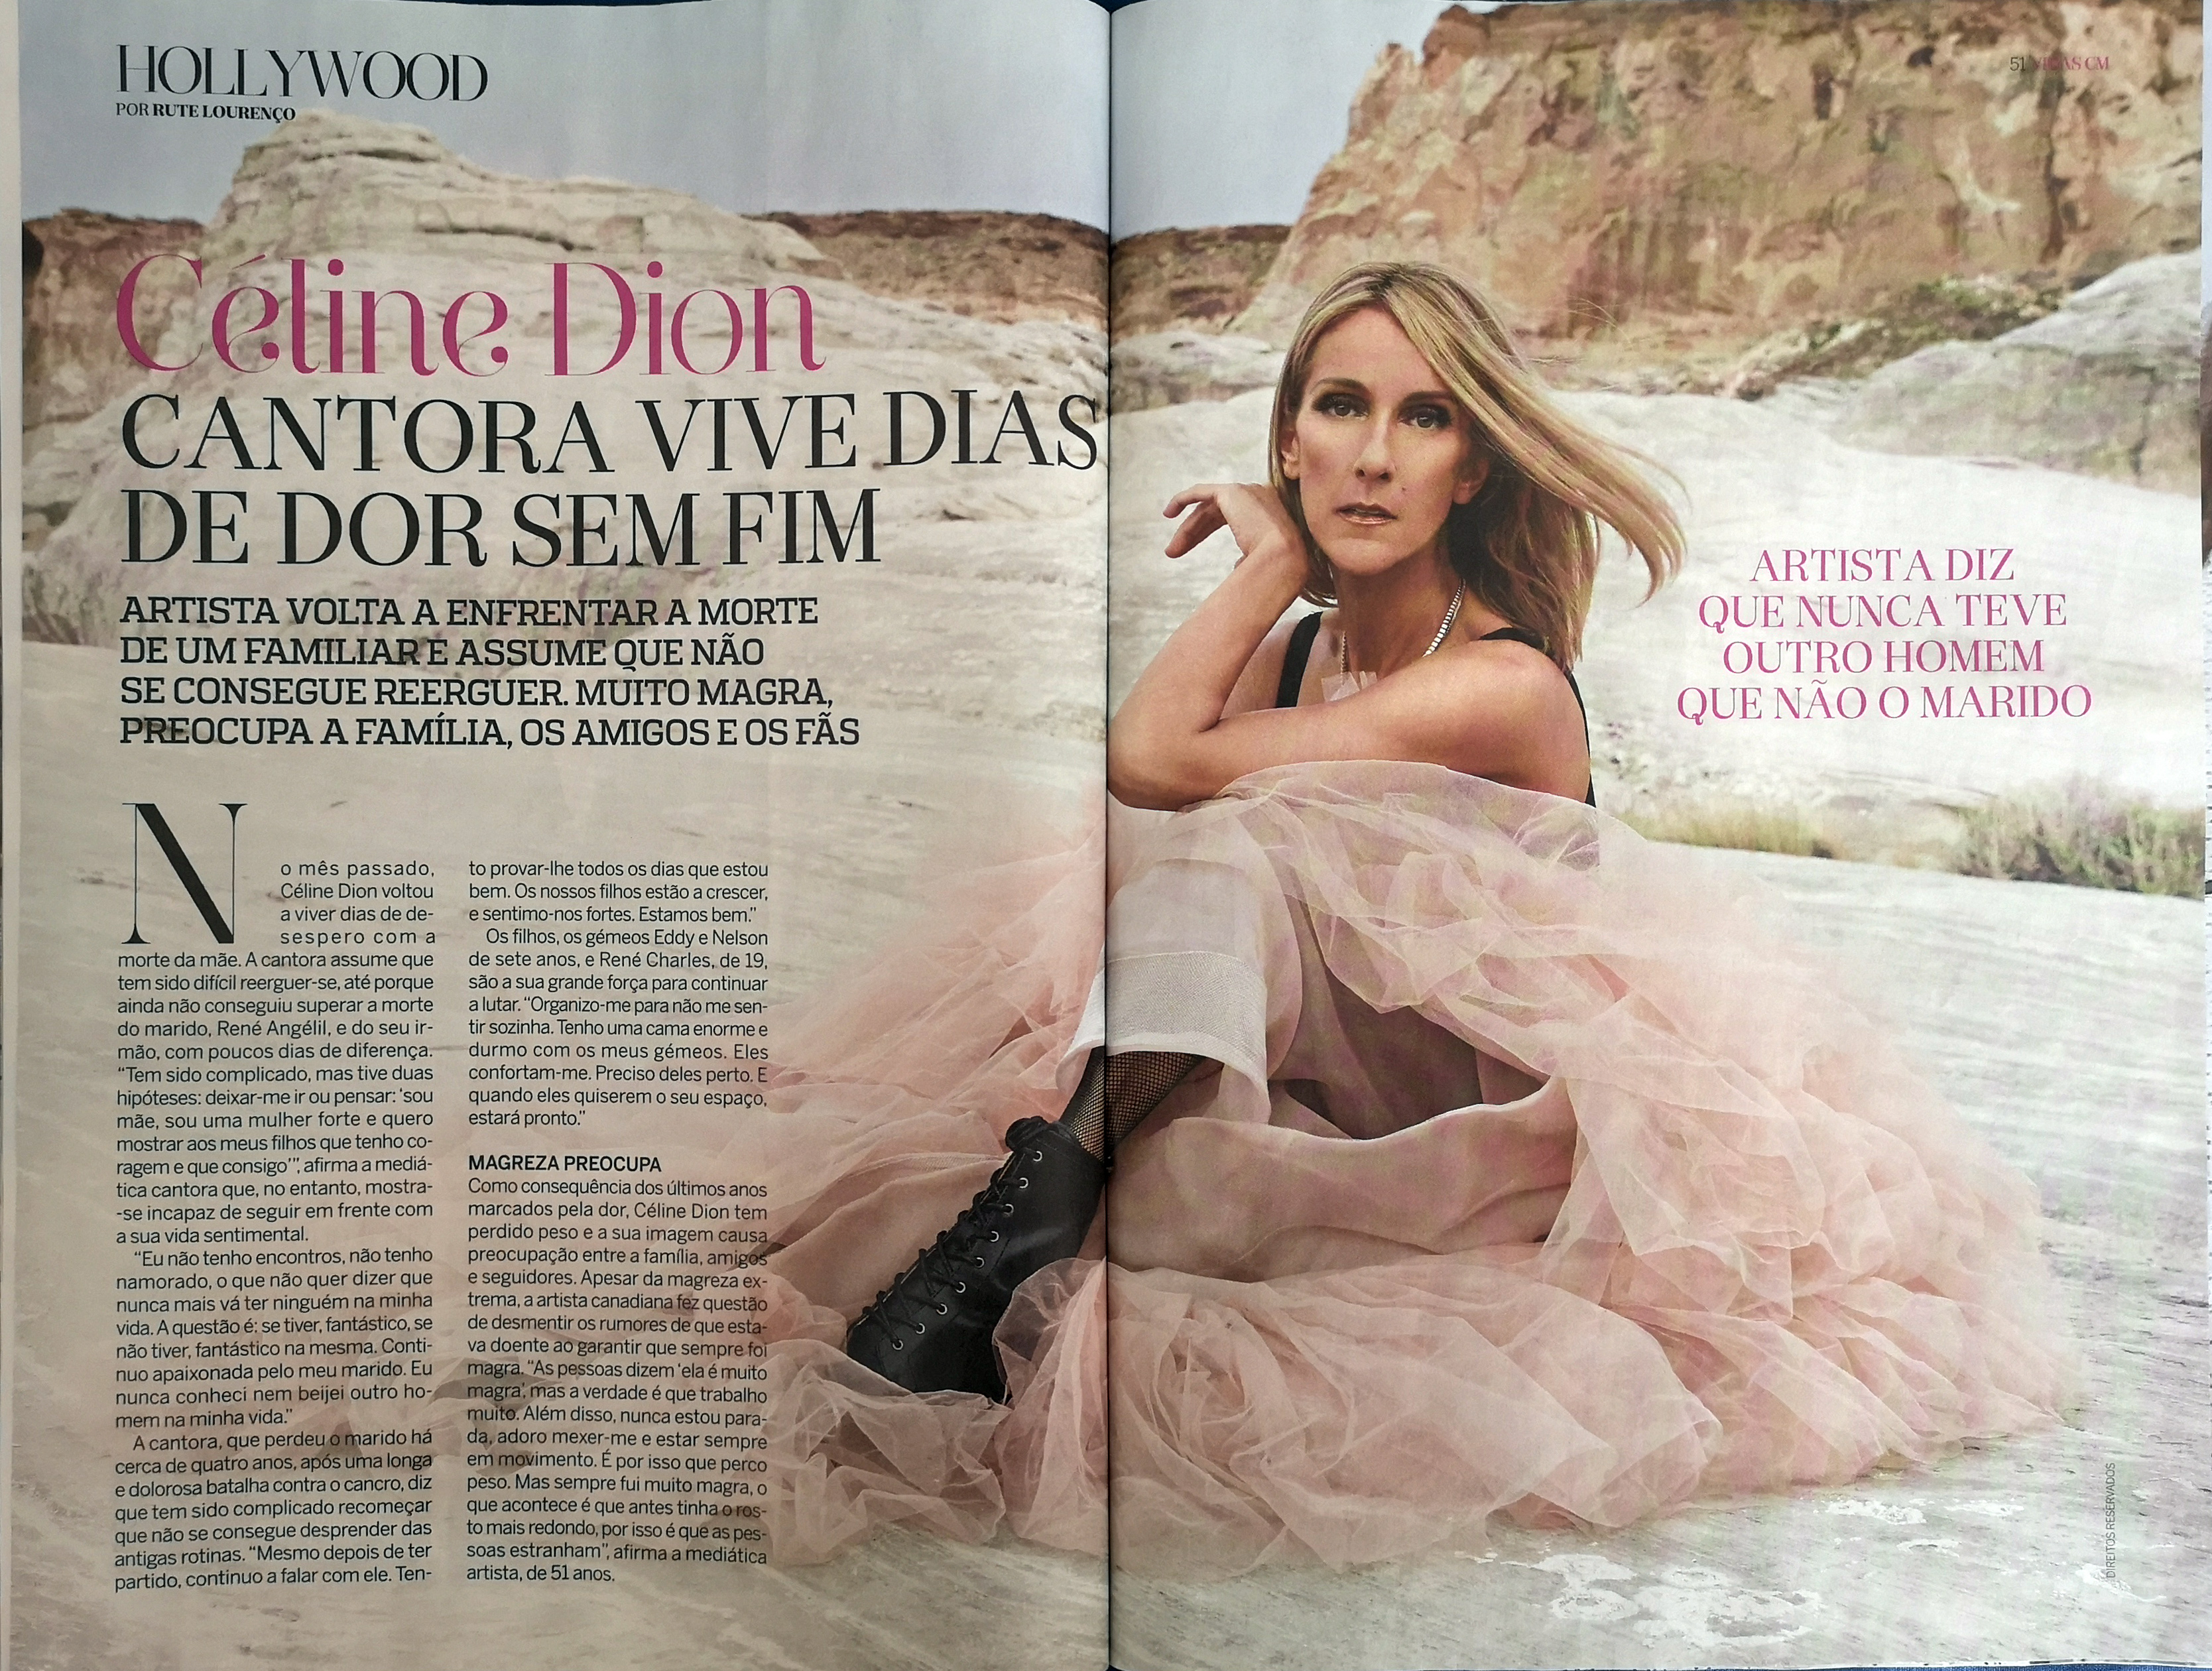 [Scan Revista Vidas] Céline Dion vive dias de dor sem fim